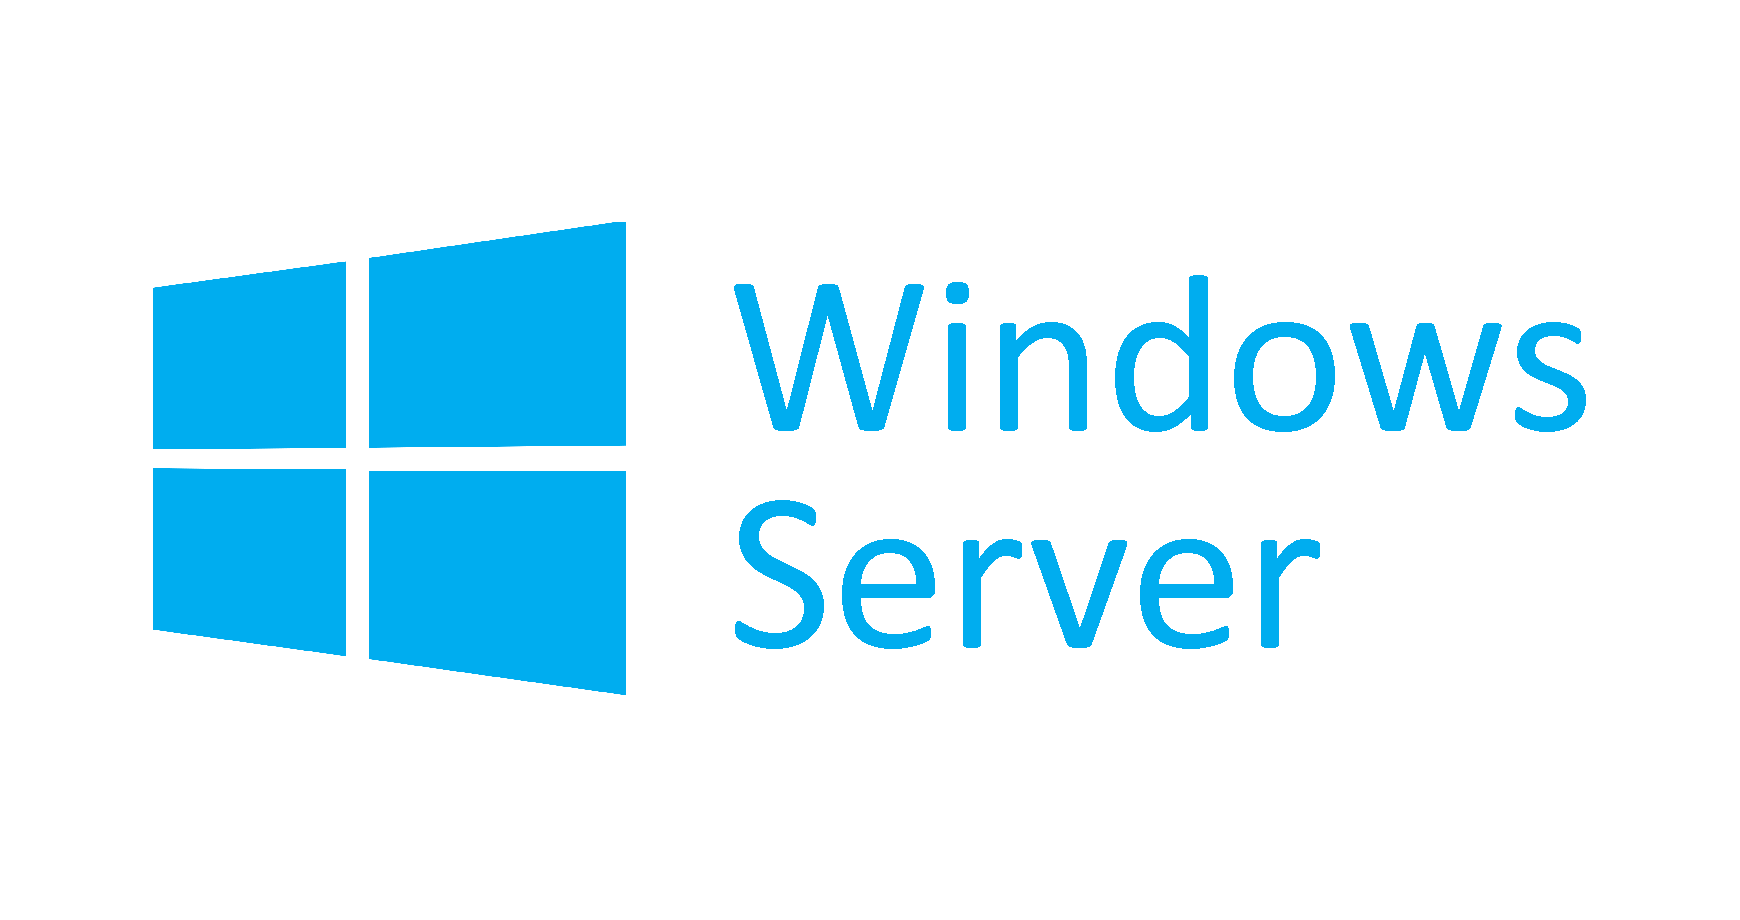 Windows Server Logo - Windows Server Logo